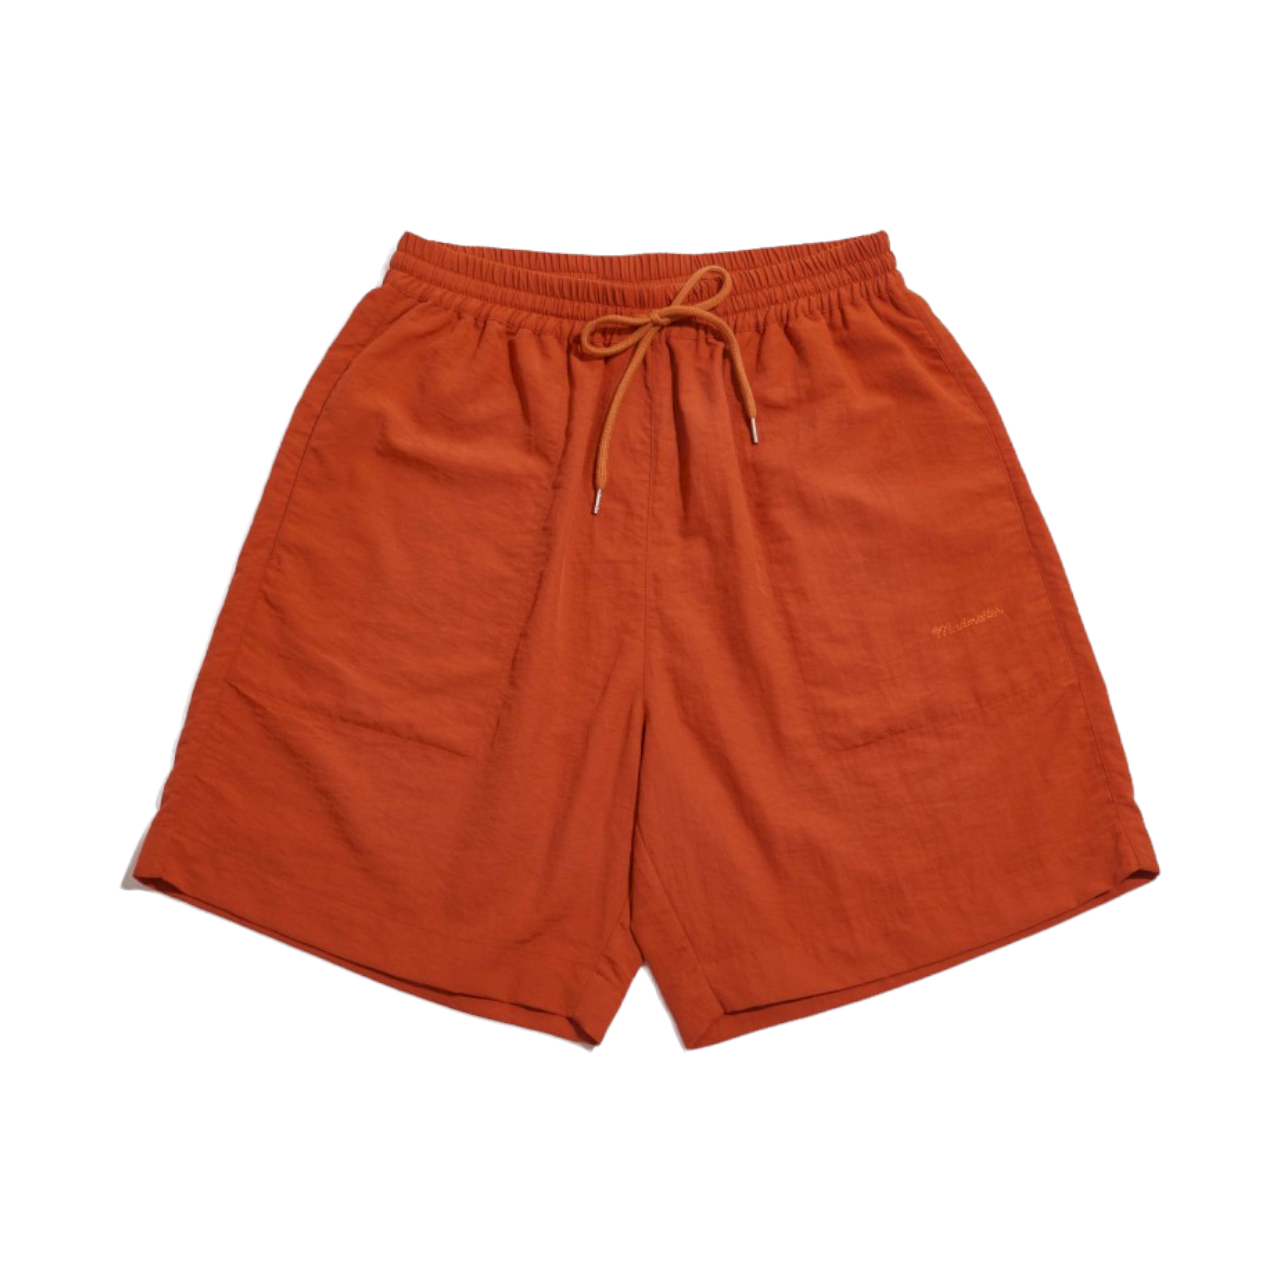 Madmatter Embroidery Nylon Shorts - Orange